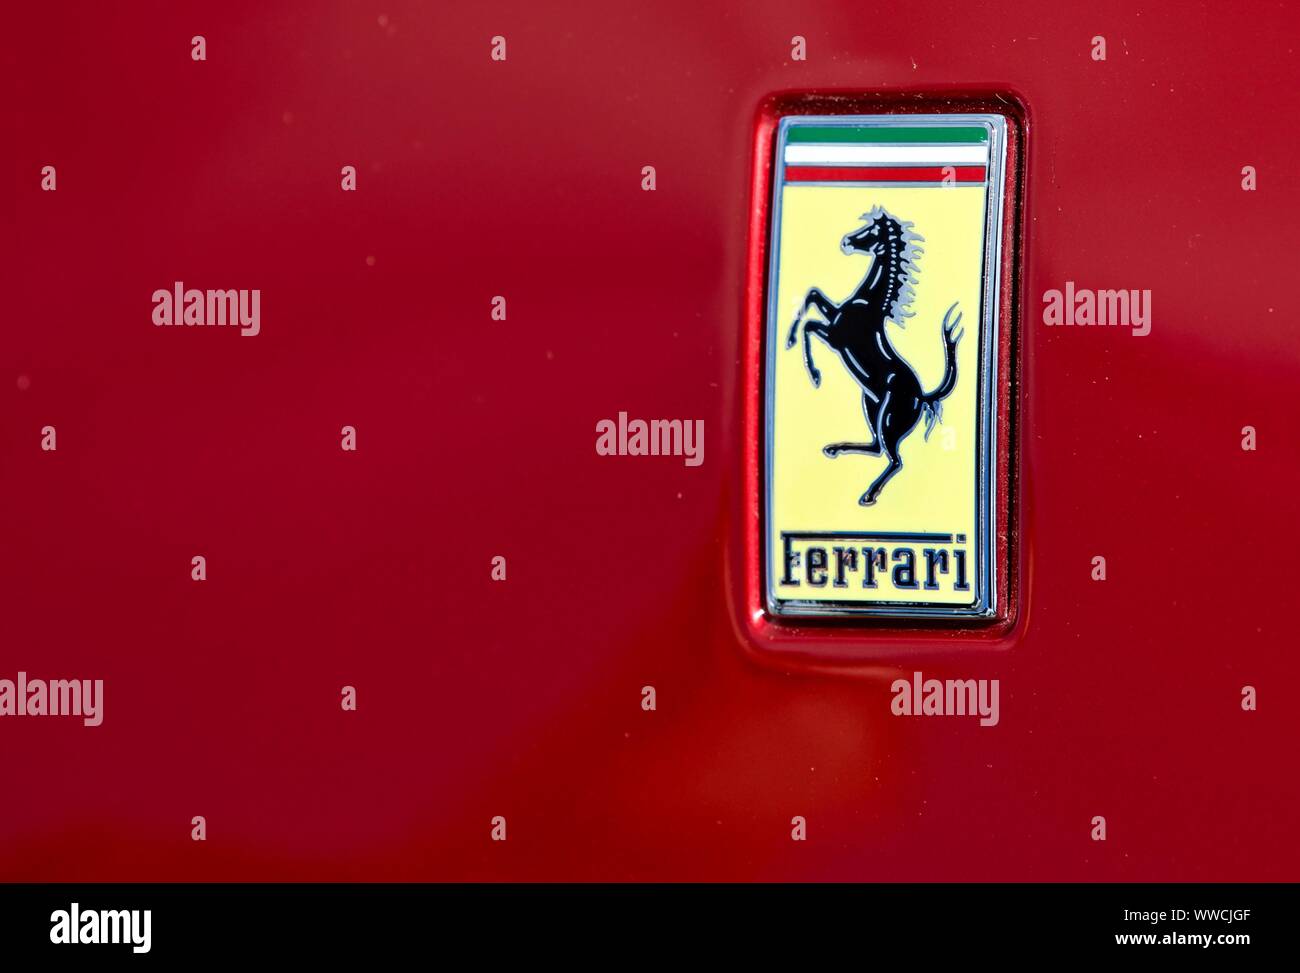 Ferrari rectangular badge Stock Photo